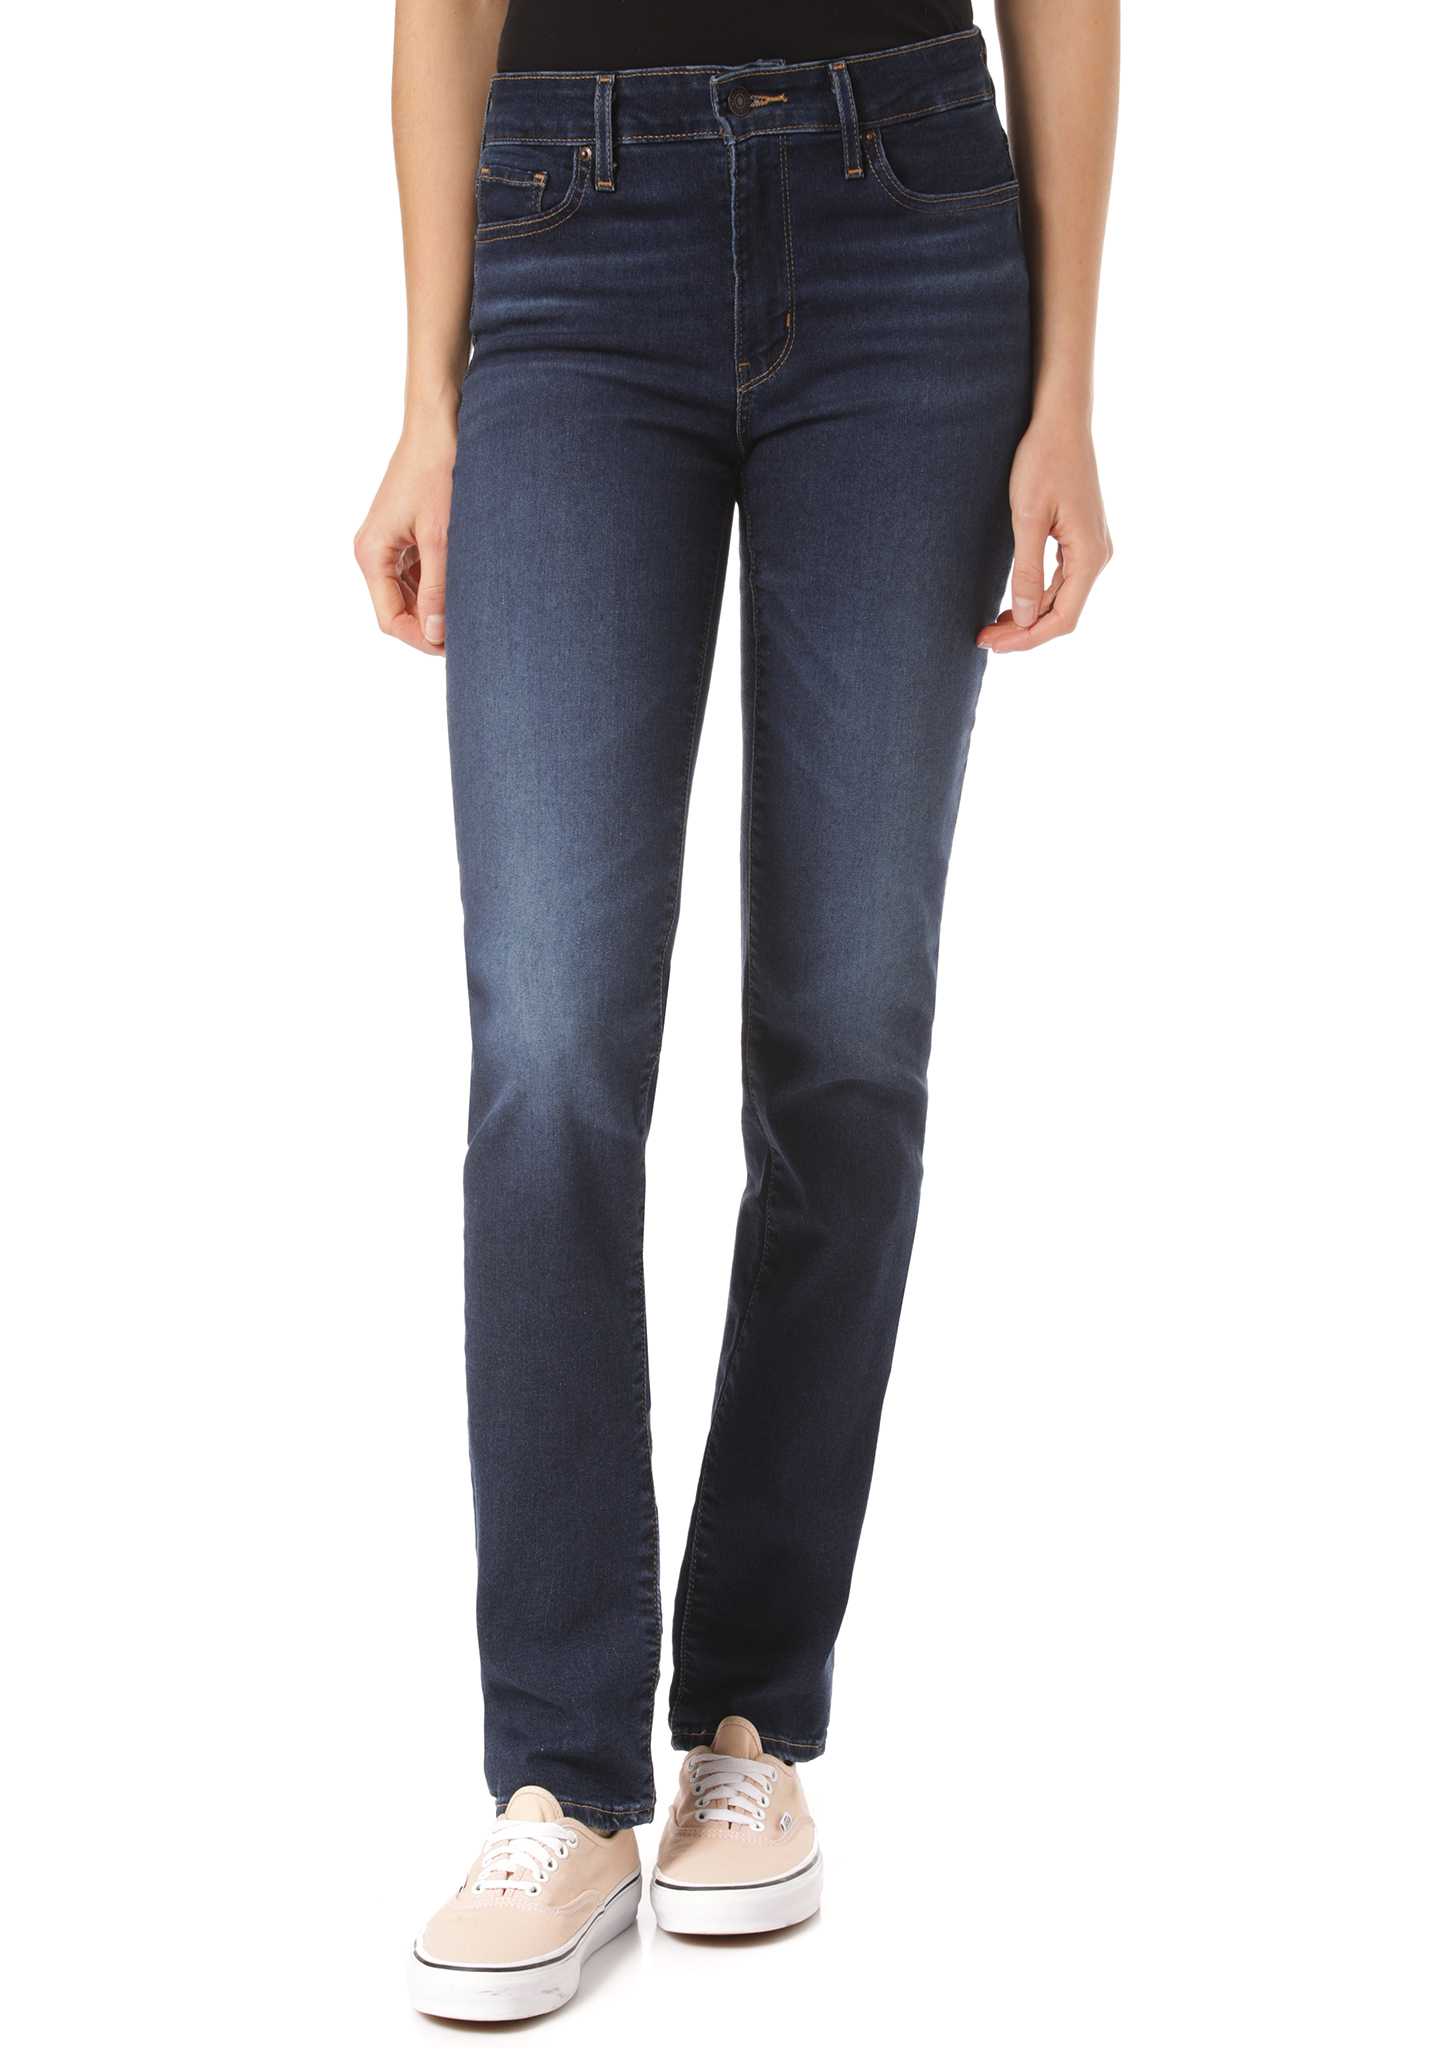 Levis 712 Slim Marken jeans 31/32